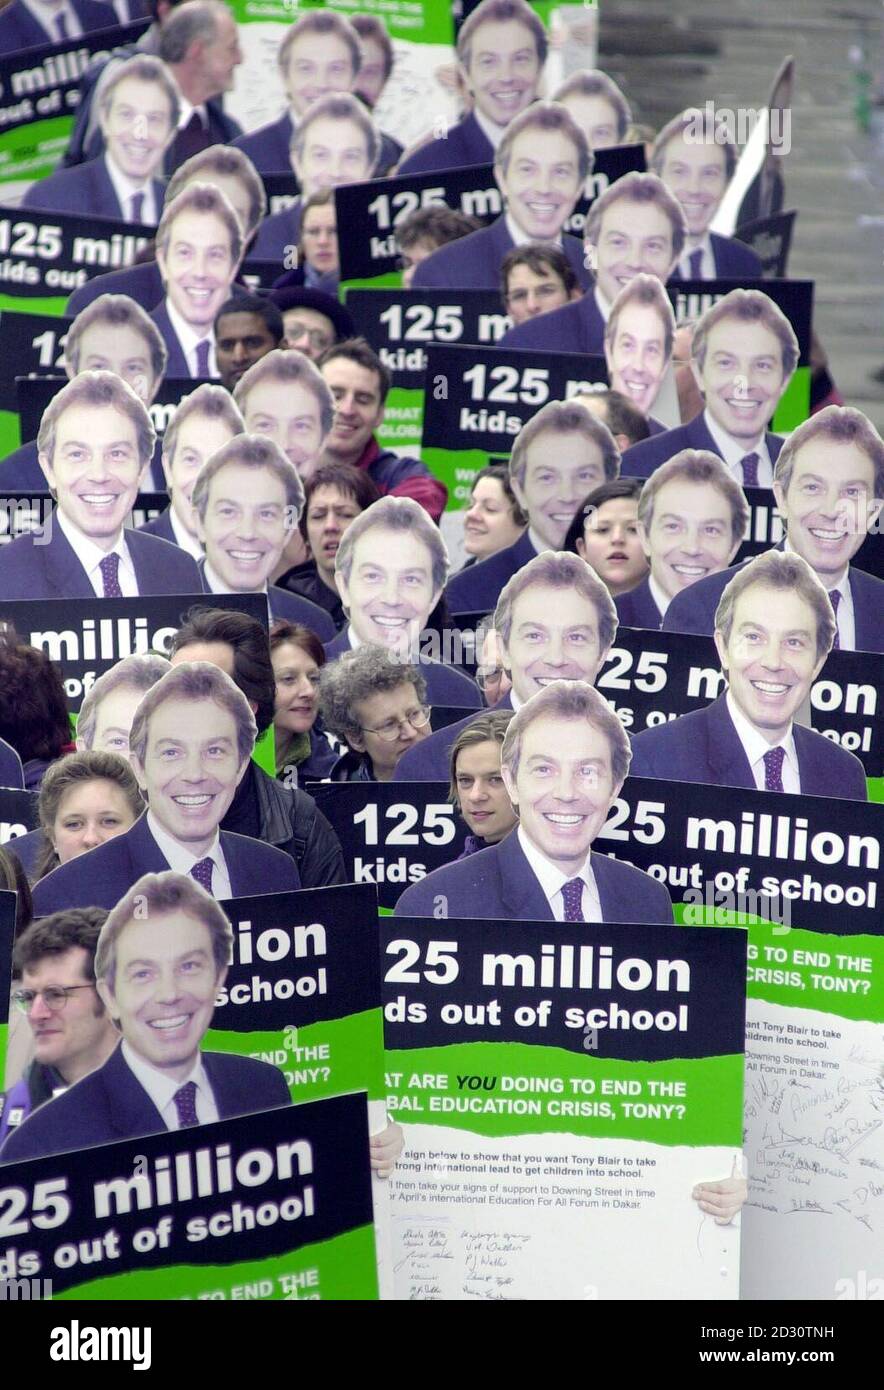 Les militants d'Oxfam sur le pont de Westminster à Londres, portant des images grandeur nature de Tony Blair. Les manifestants marchaient vers Downing Street pour présenter une pétition appelant le Premier ministre à prendre l'initiative de s'attaquer à la crise mondiale de l'éducation. Banque D'Images